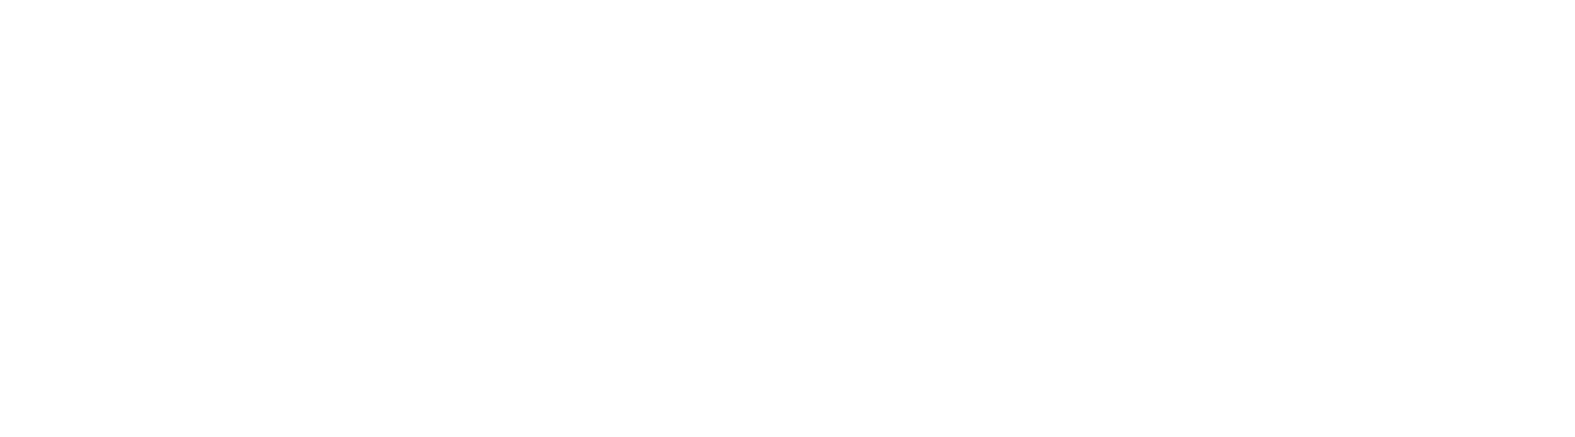 Healthpeak Properties
 logo large for dark backgrounds (transparent PNG)